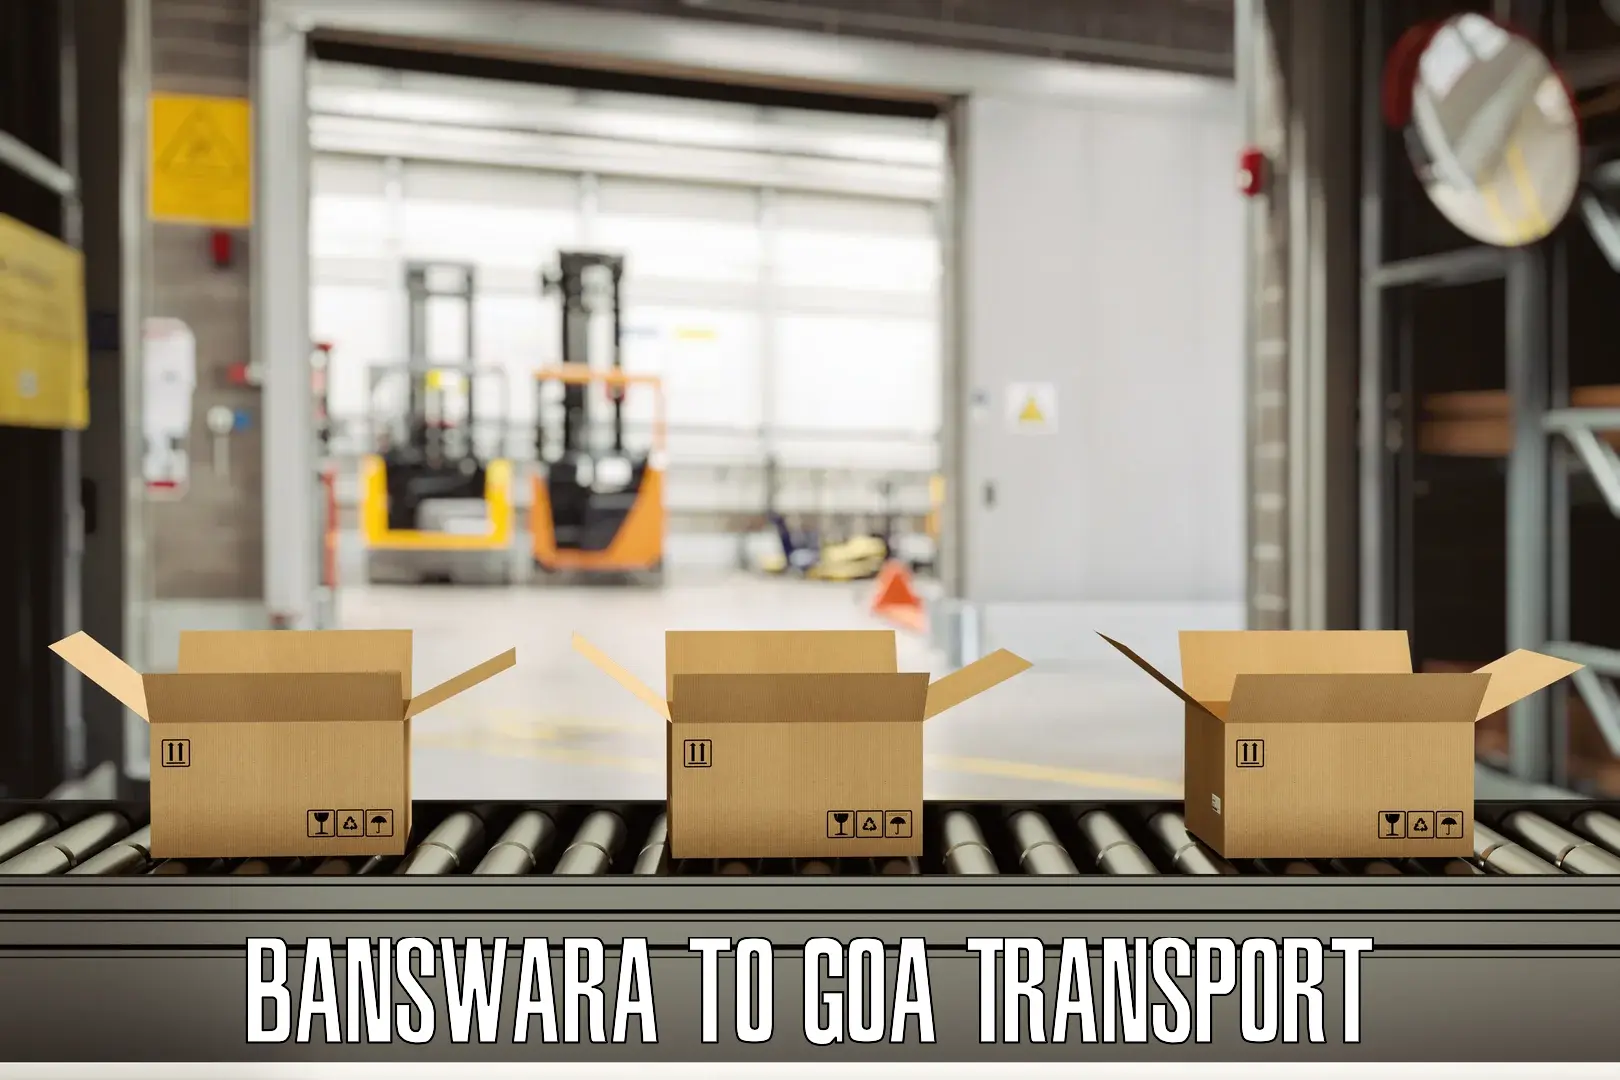 Pick up transport service Banswara to Panjim